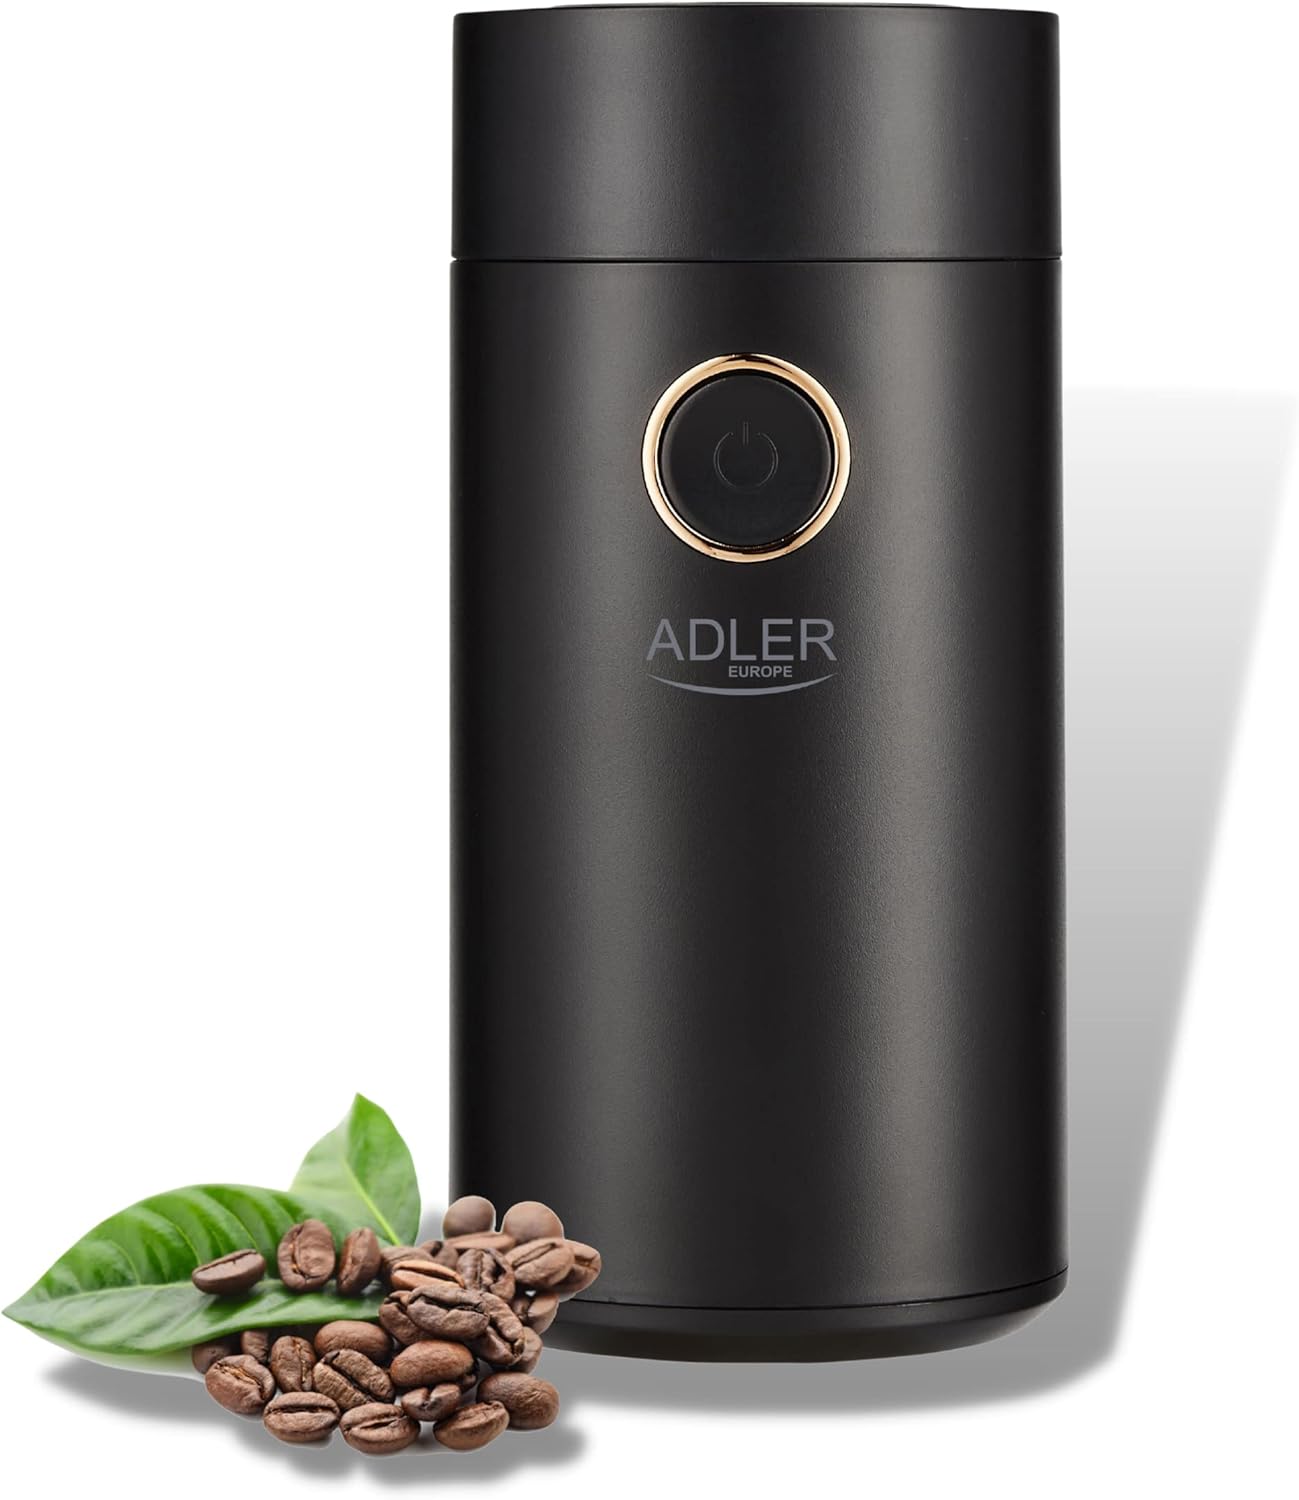 Adler - Coffee Grinder - Electric Coffee Grinder - Stainless Steel - Coffee Grinder